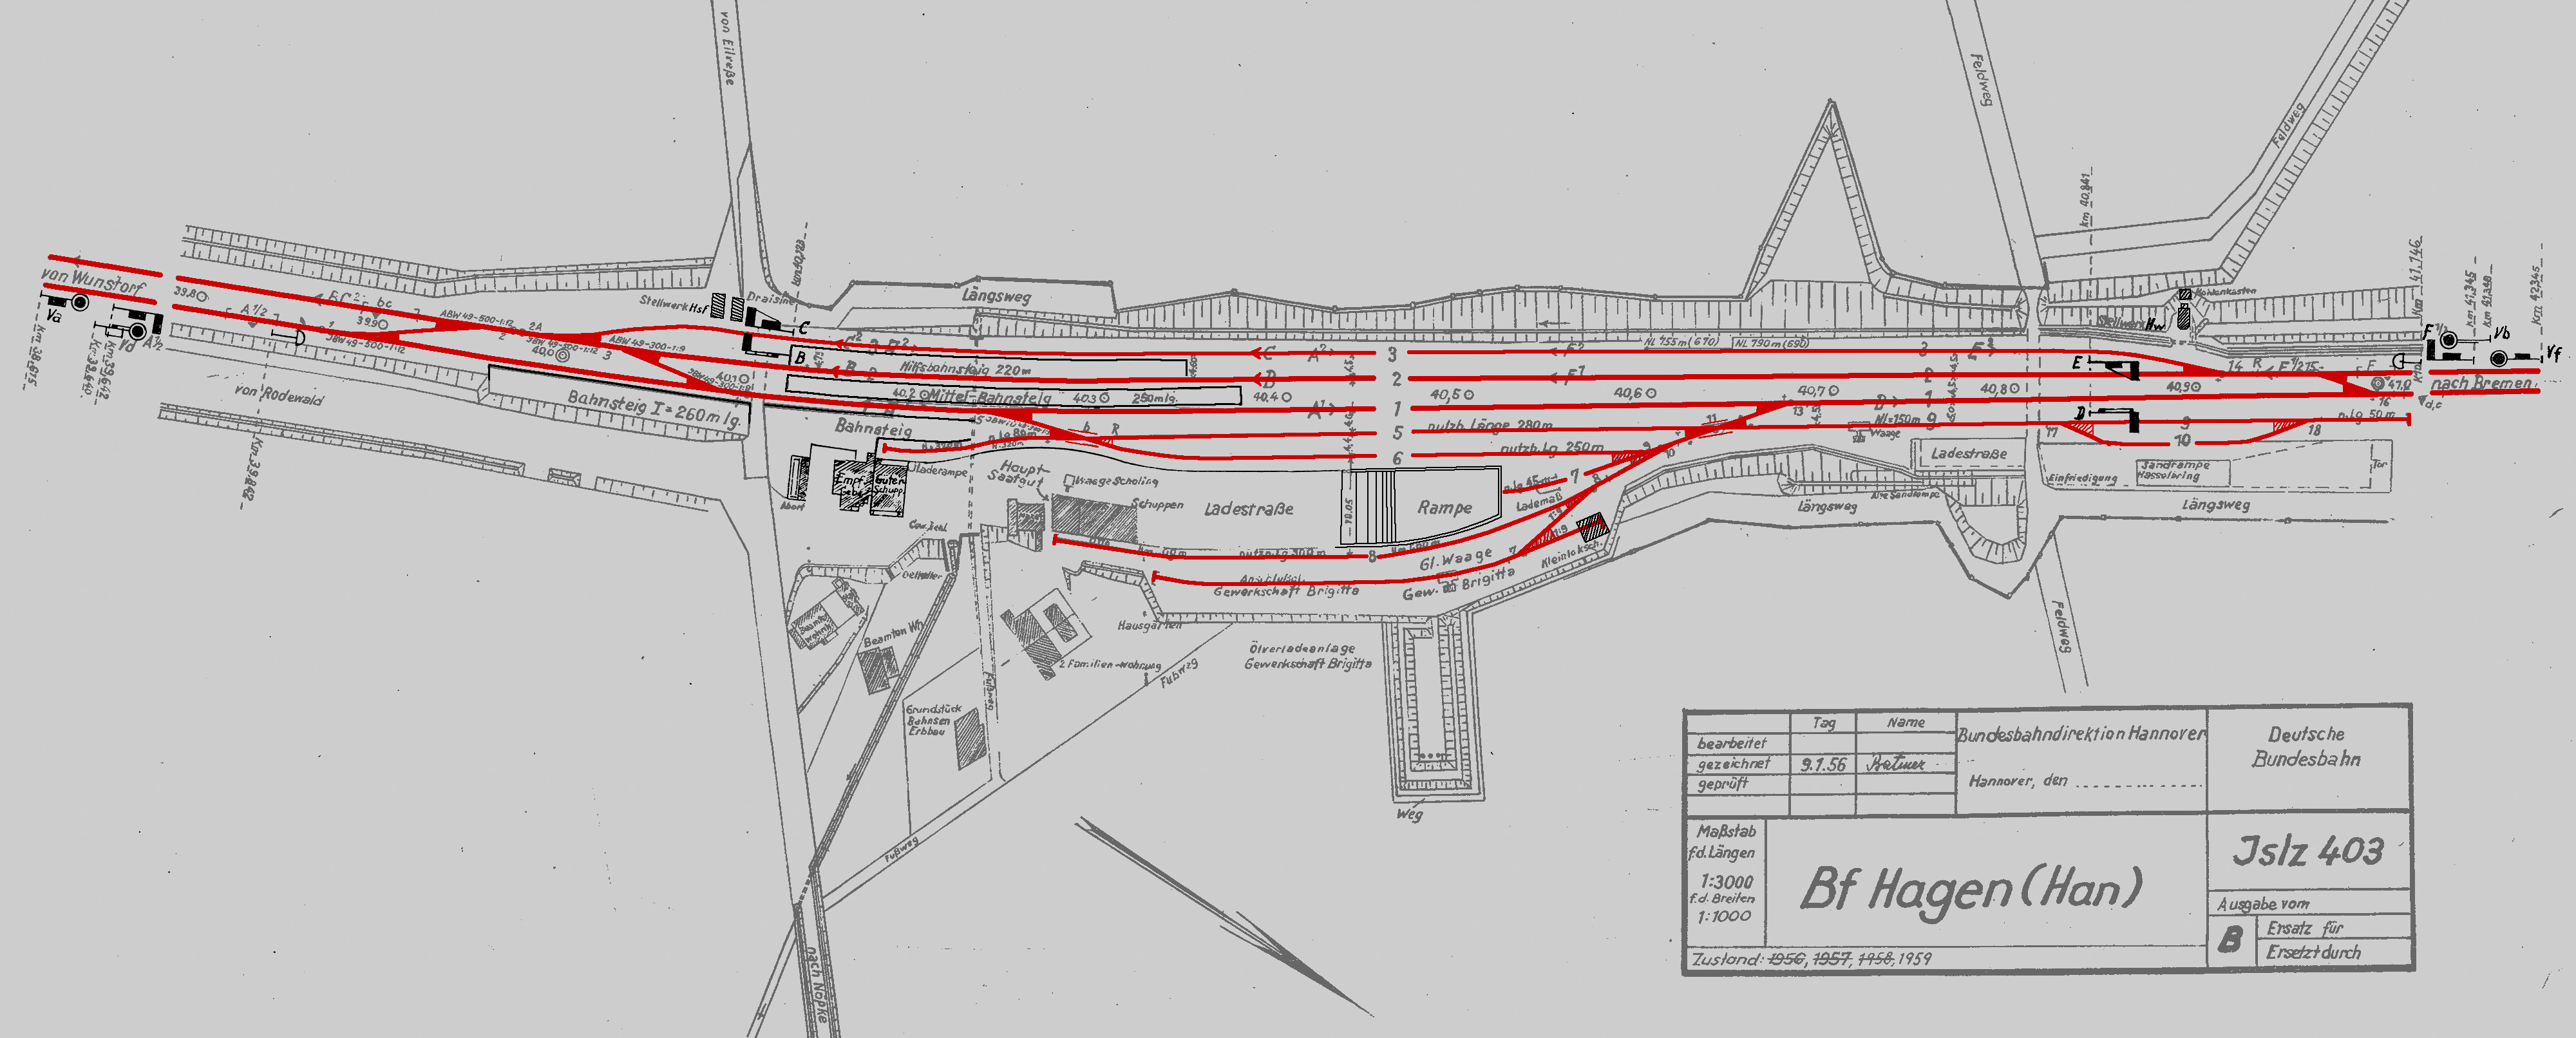 Gleisplan des Bahnhofs Hagen (Han) von 1959